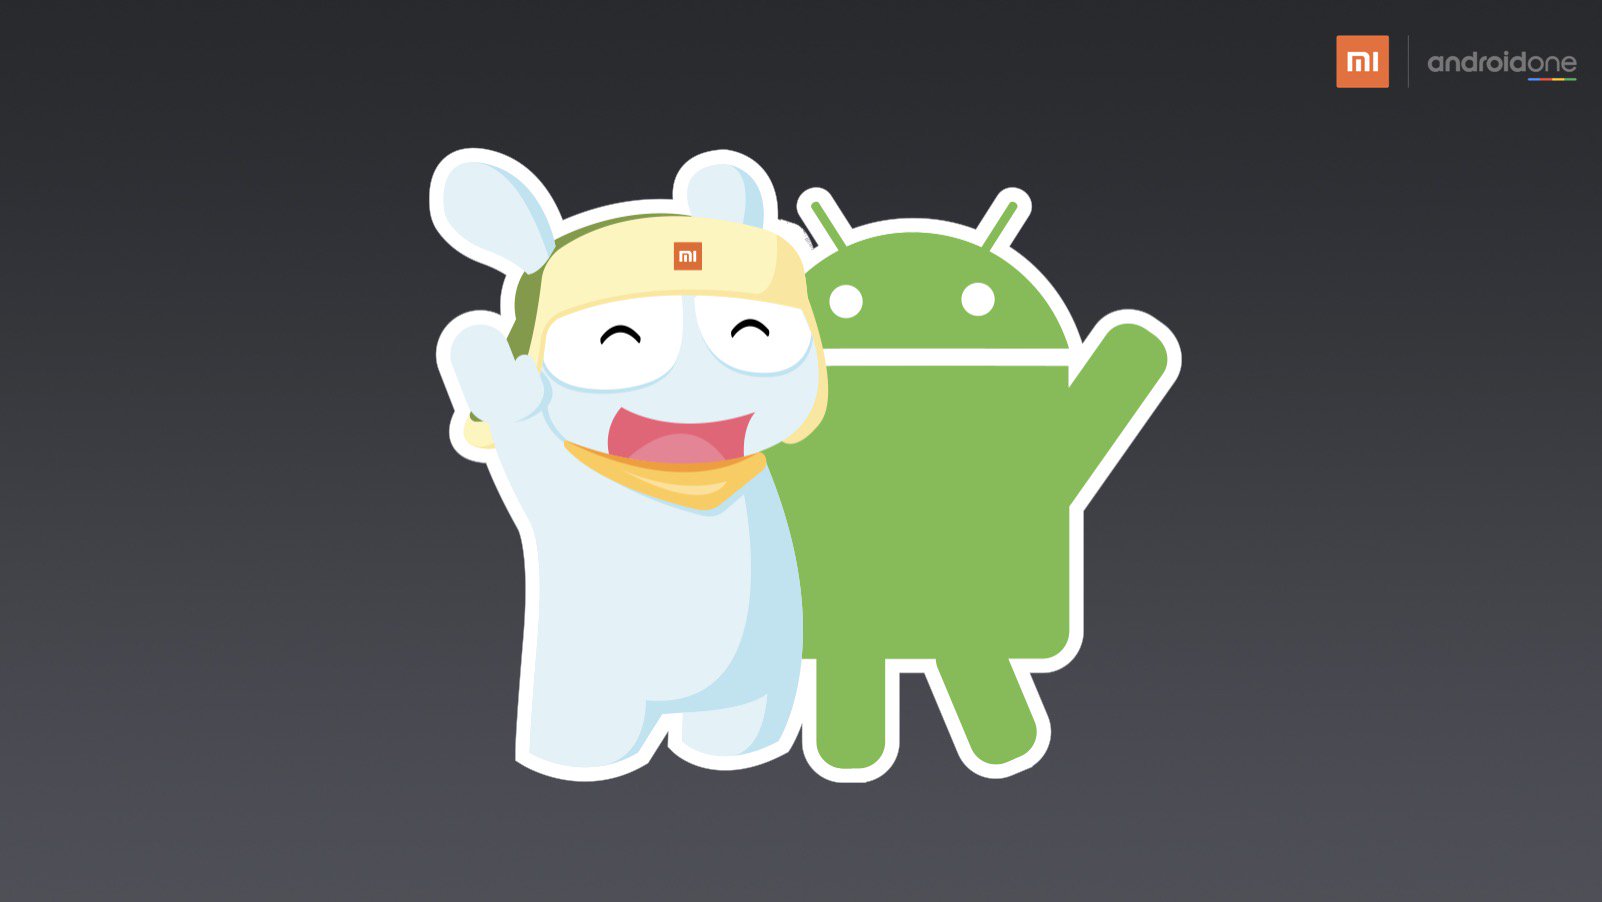 Xiaomi Mi A1 — первый смартфон производителя с «чистым» Android, созданный на базе Mi 5X по программе Android One. Его можно будет купить в Украине!